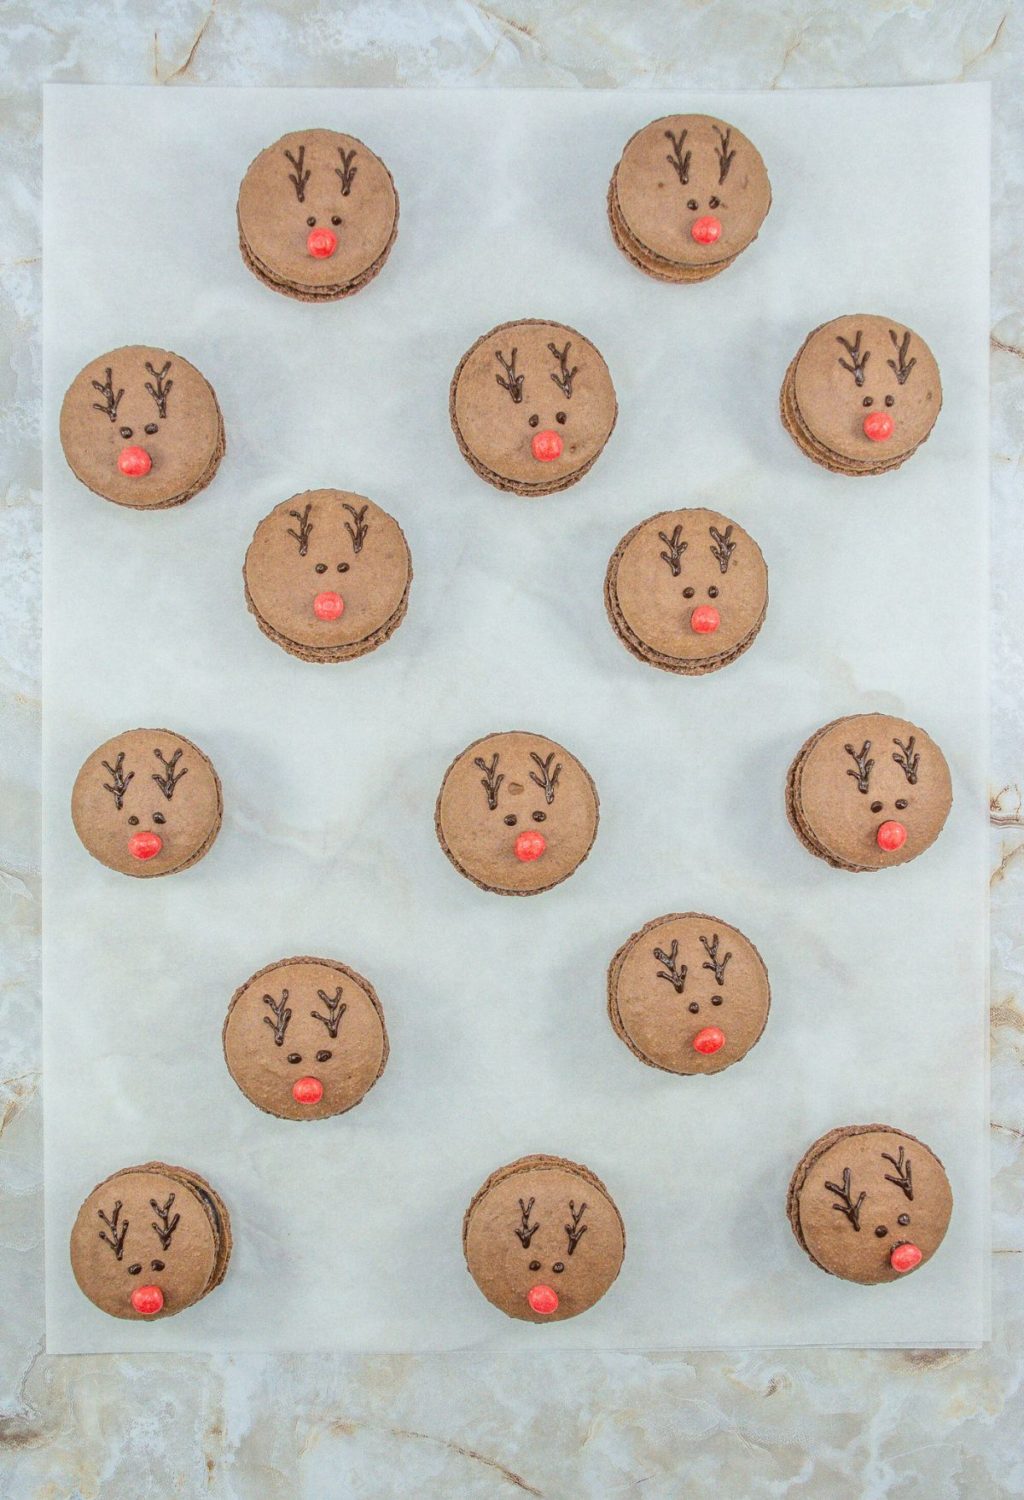 Reindeer cookies on a baking sheet.